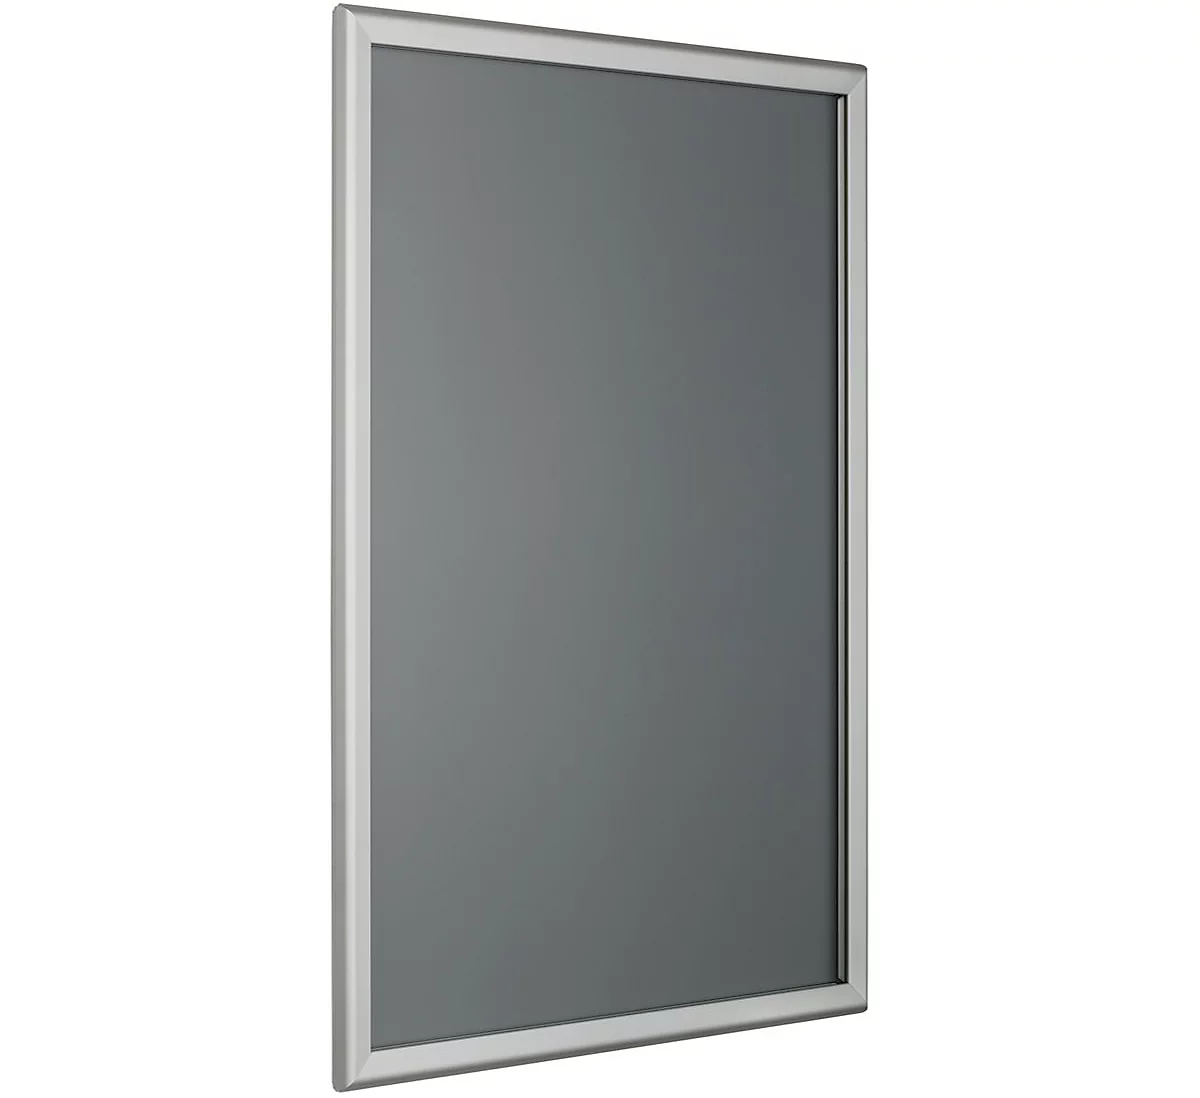 Marco intercambiable, esquinas angulares, perfil de aluminio anodizado plata, DIN A4, 210 x 297 mm